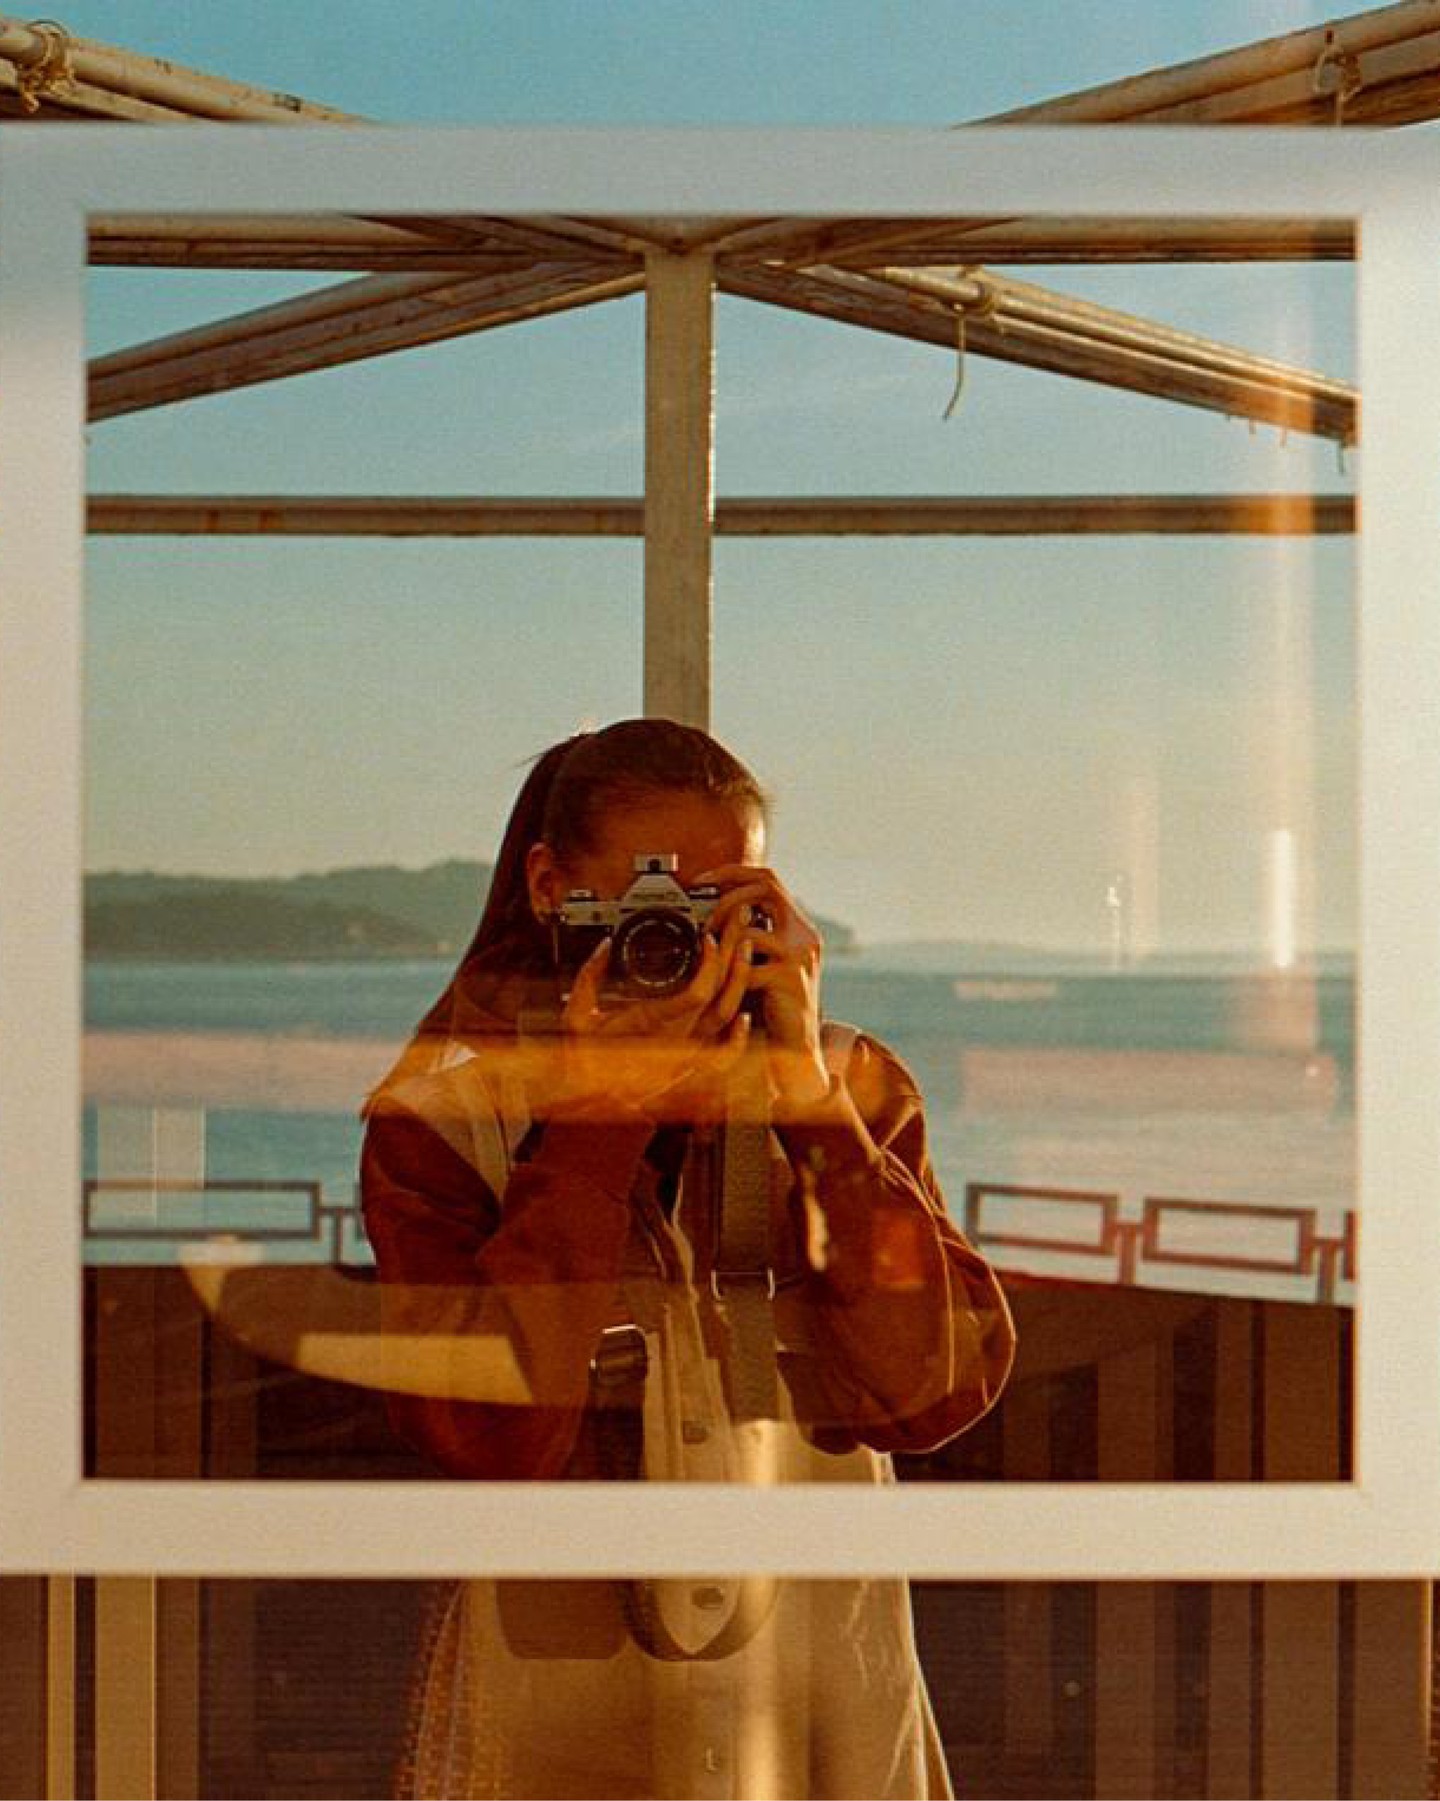 📸 🎉 Barbora zdieľal toto ako Kodak Moment Dňa. 📸 🎉

Pošlite nám svoje momenty použitím hashtagu #kodakmoments. Všetky fotky nájdete na našej webovej stránke https://kmotd.kodakmoments.com/ugc/gallery

#tlačnakodak #kmotd #kodakmomentydňa #zapojte #zdieľajtefotky #fotkadňa #najfotky